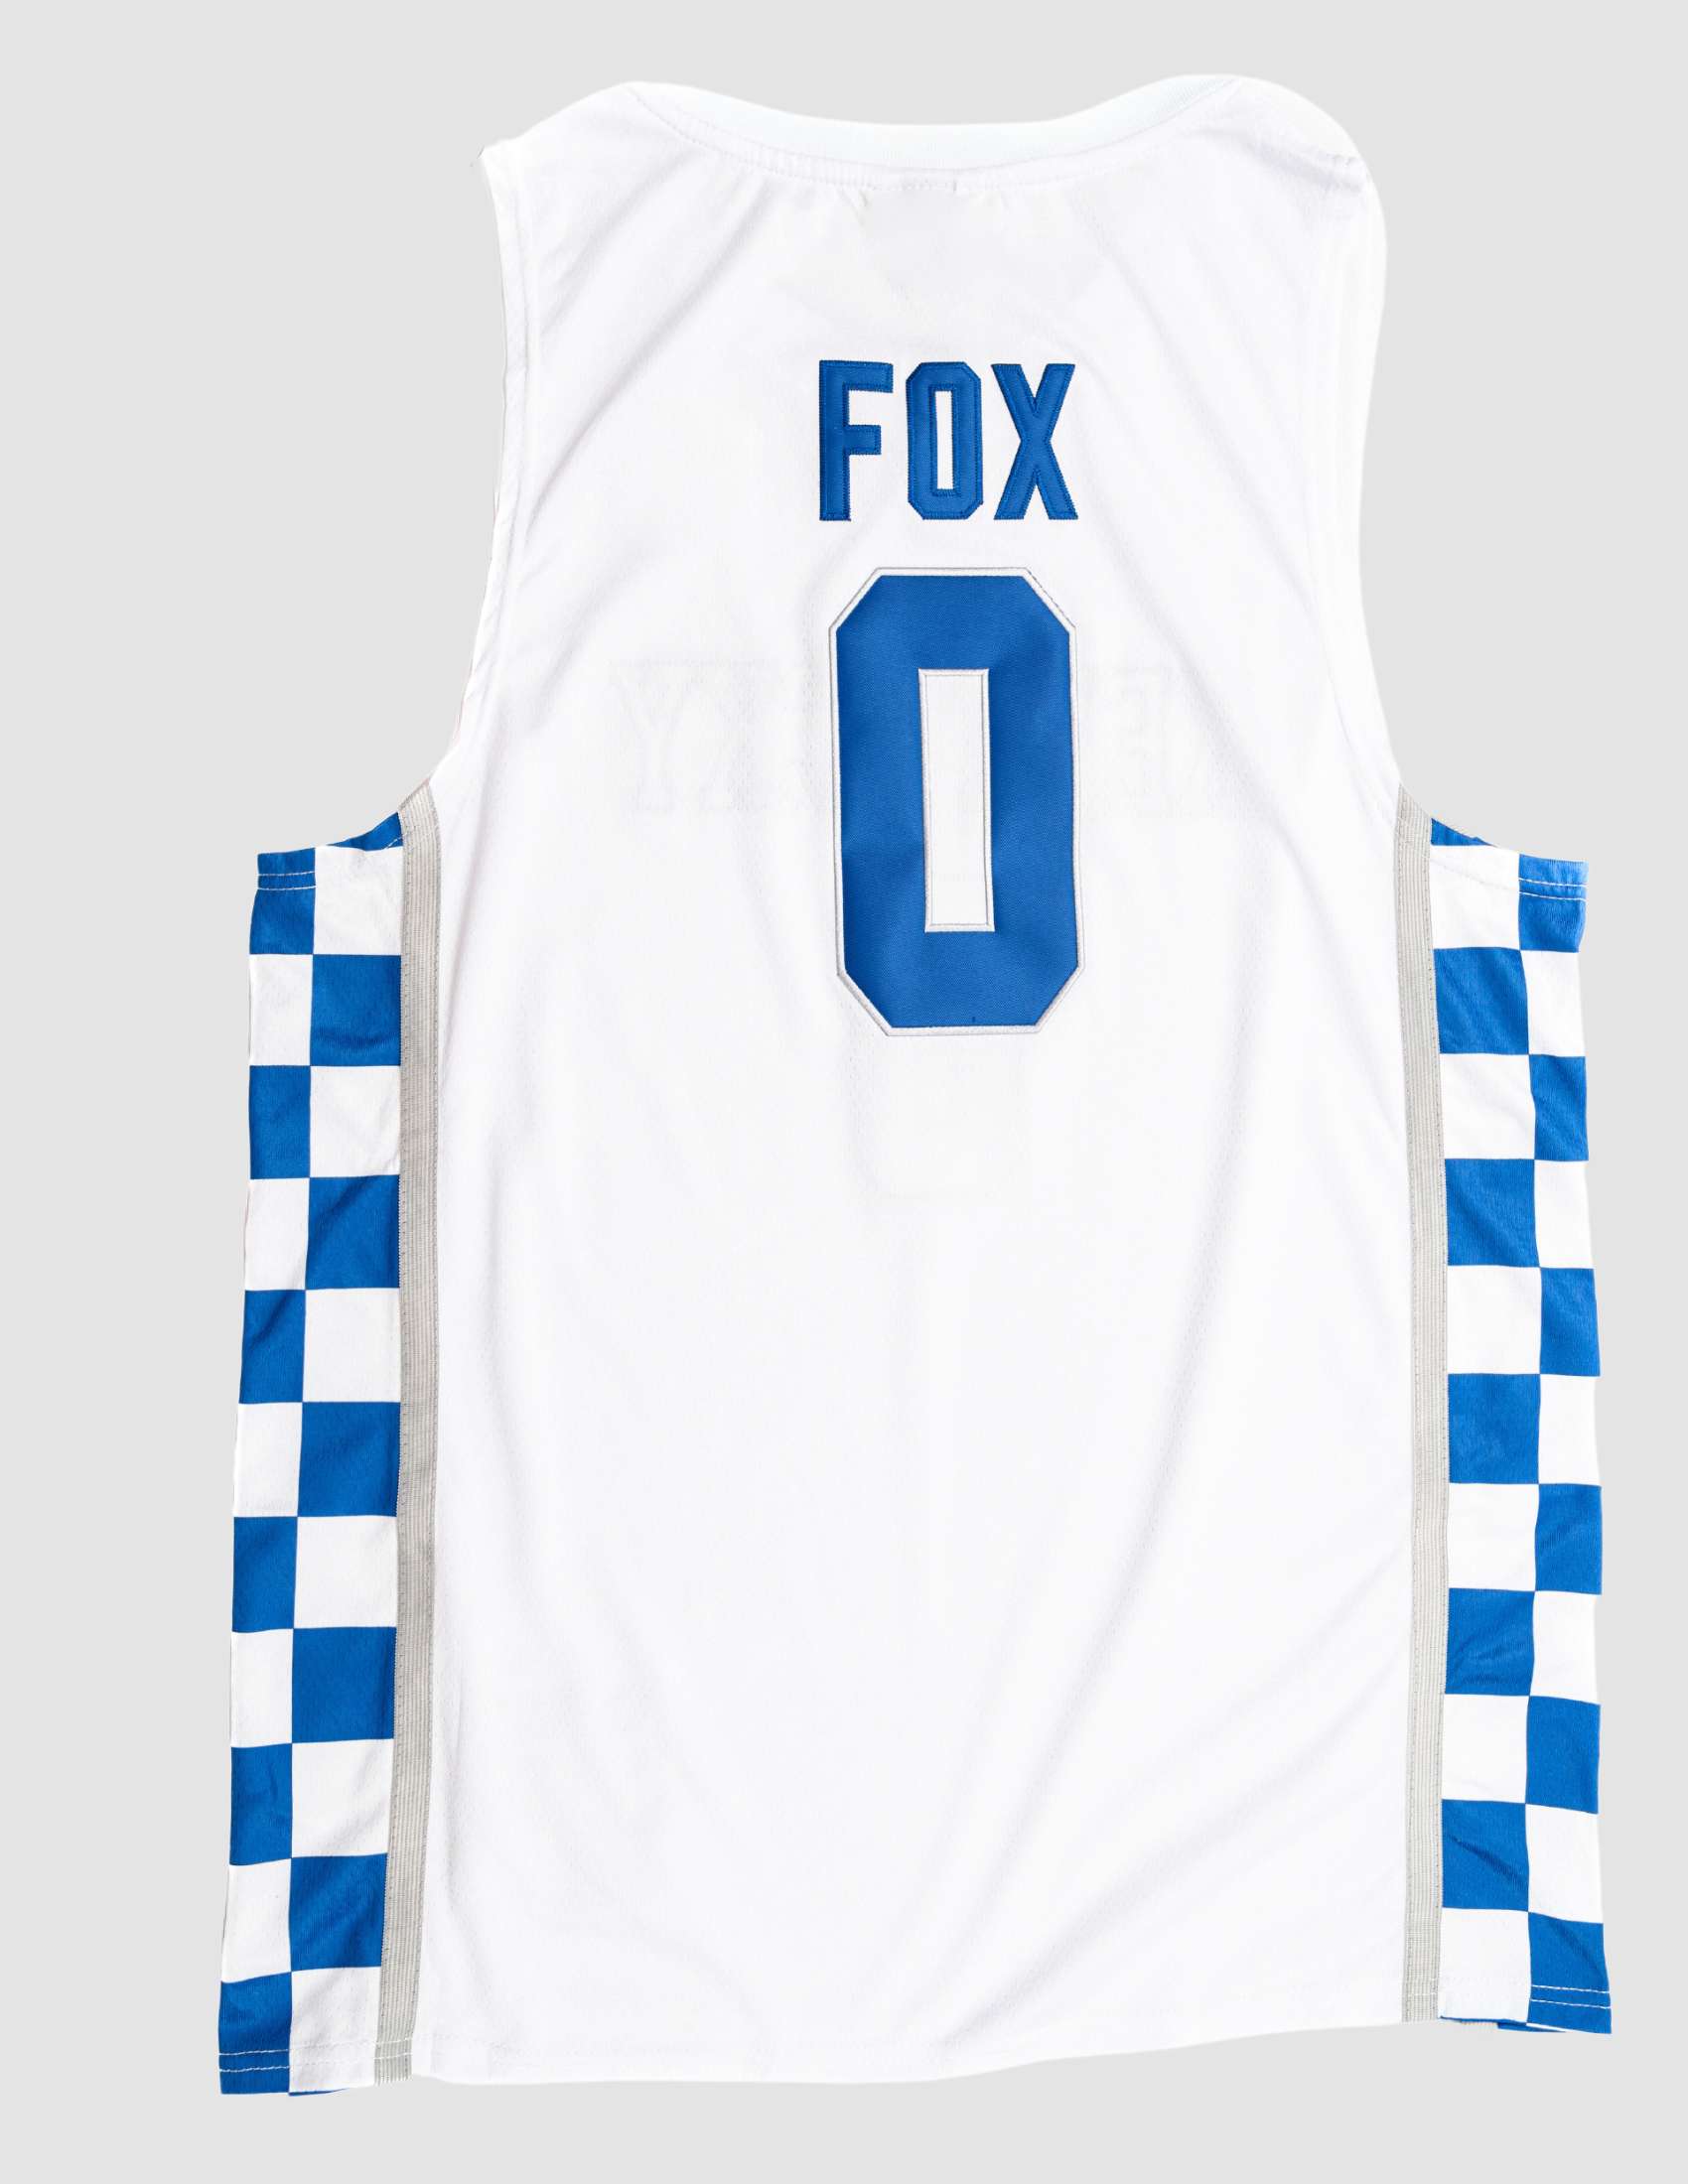 De'Aaron Fox Jerseys, De'Aaron Fox T-Shirts & Gear